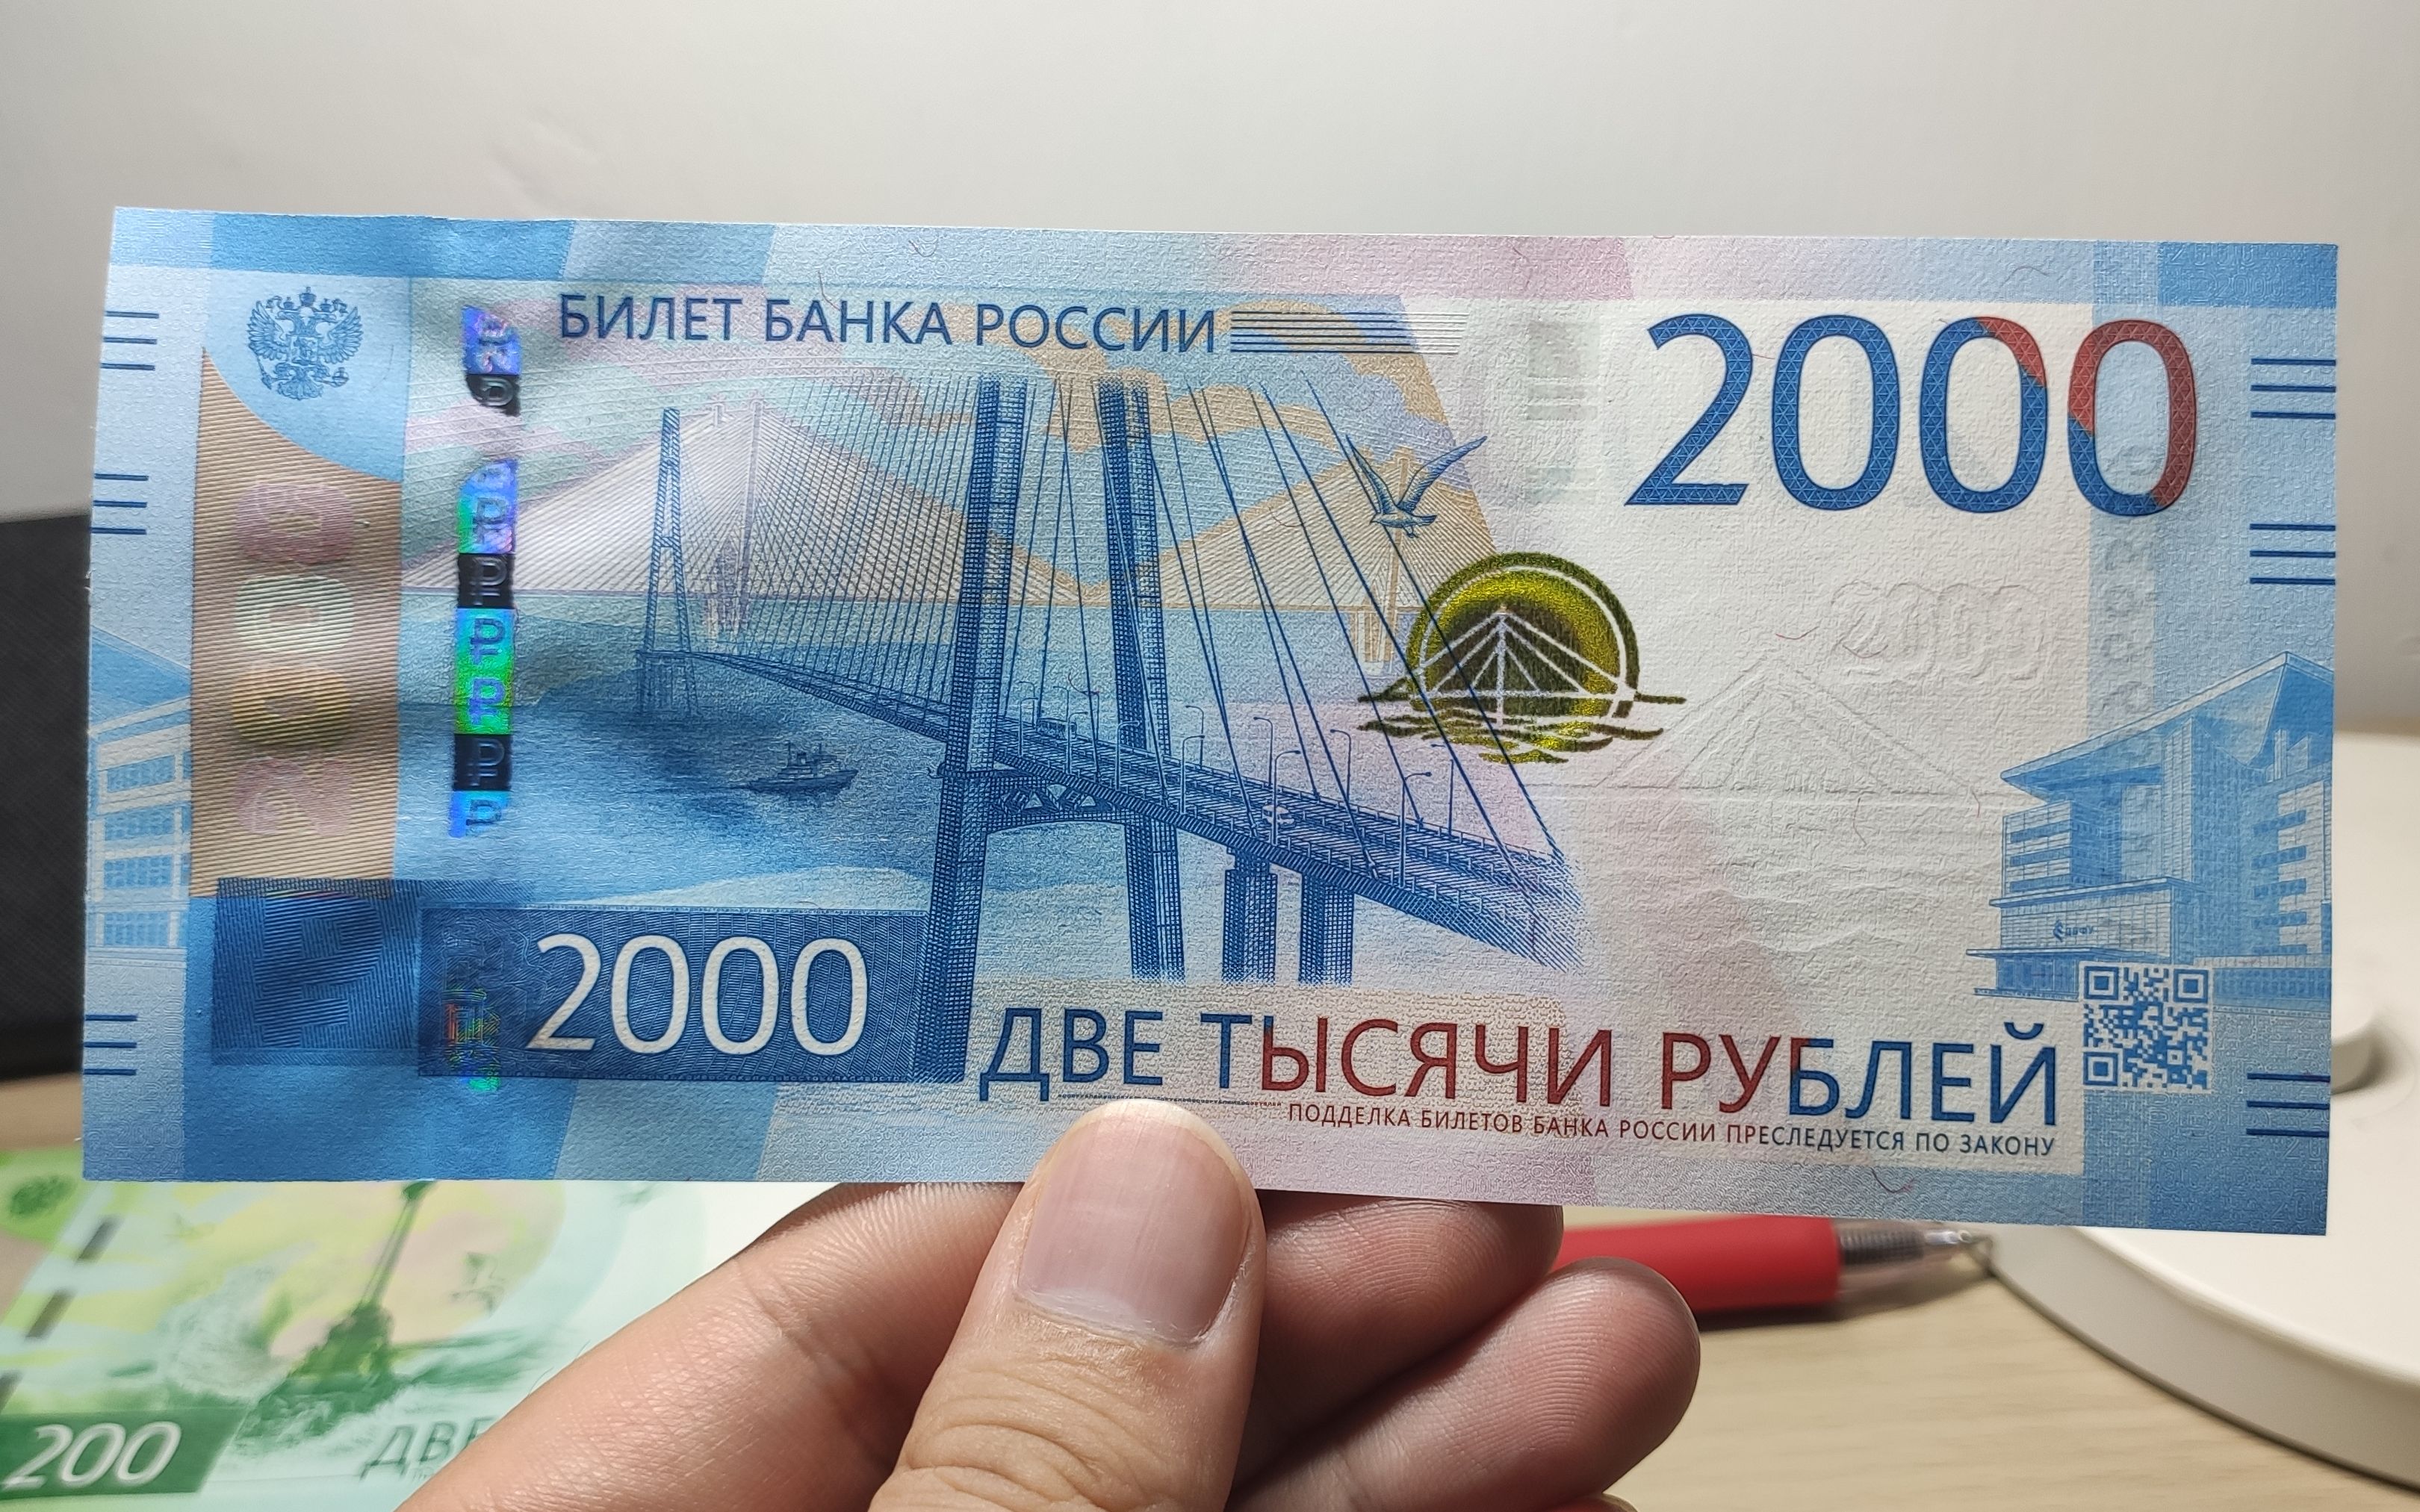 俄罗斯新版2000卢布纸币聚集了俄罗斯顶尖的防伪技术